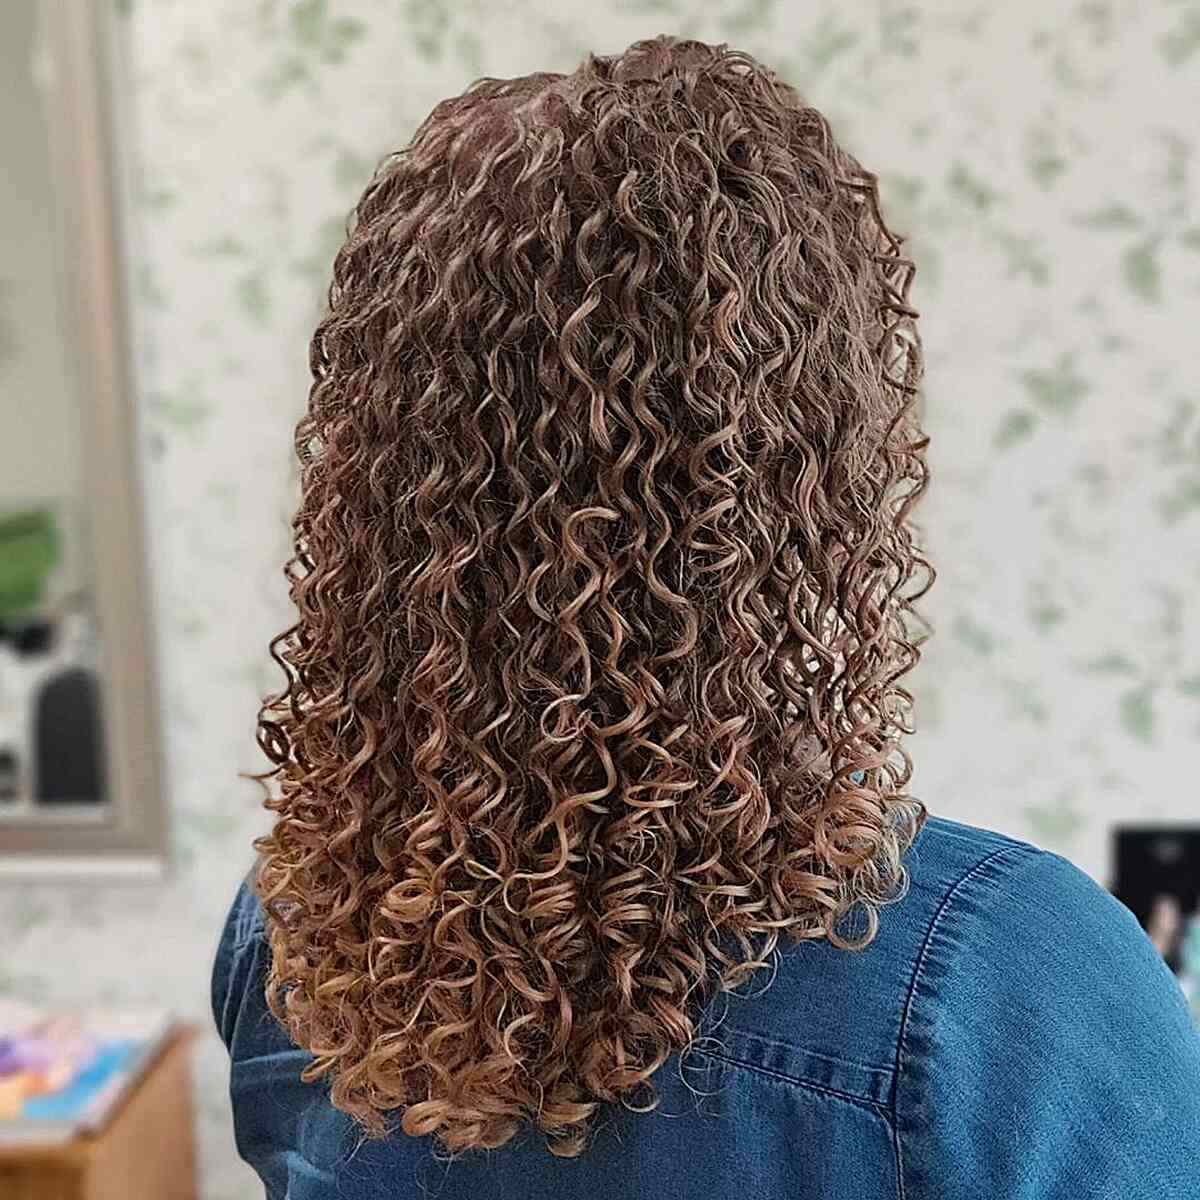 Medium U-Cut with Permanent Spiral Curls